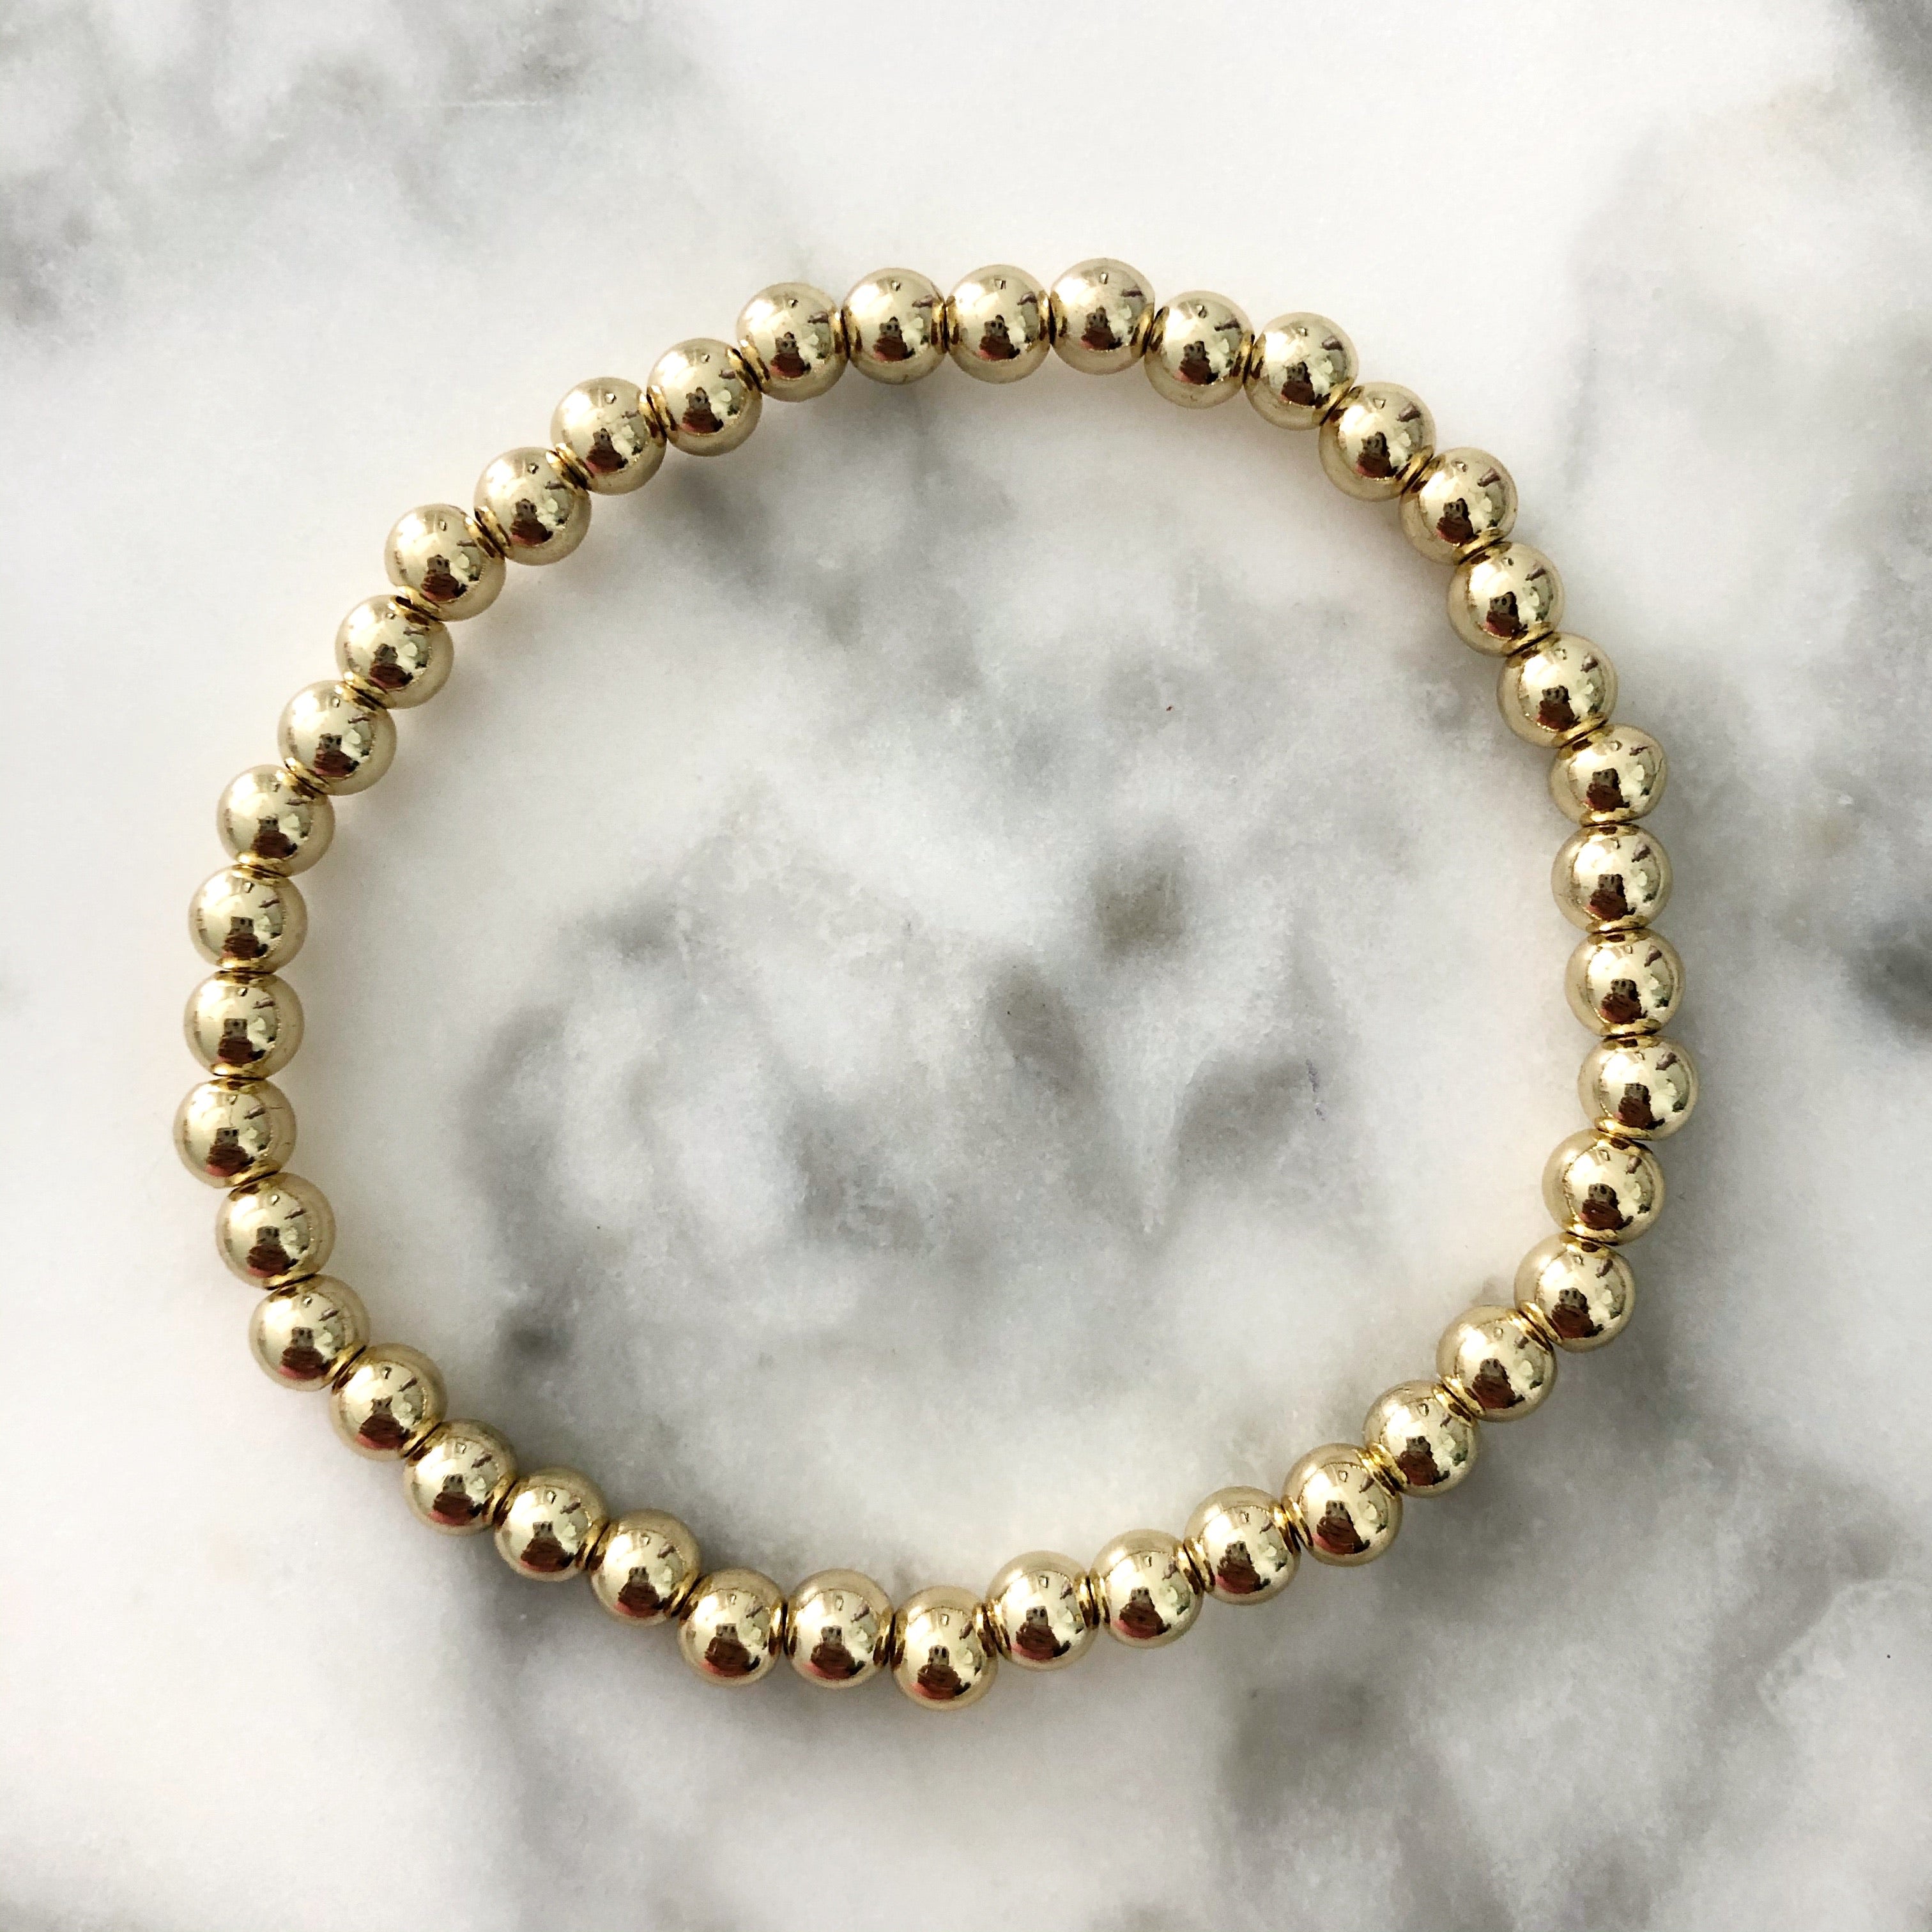 Birthstone Beaded Name Bracelet - Gold - February